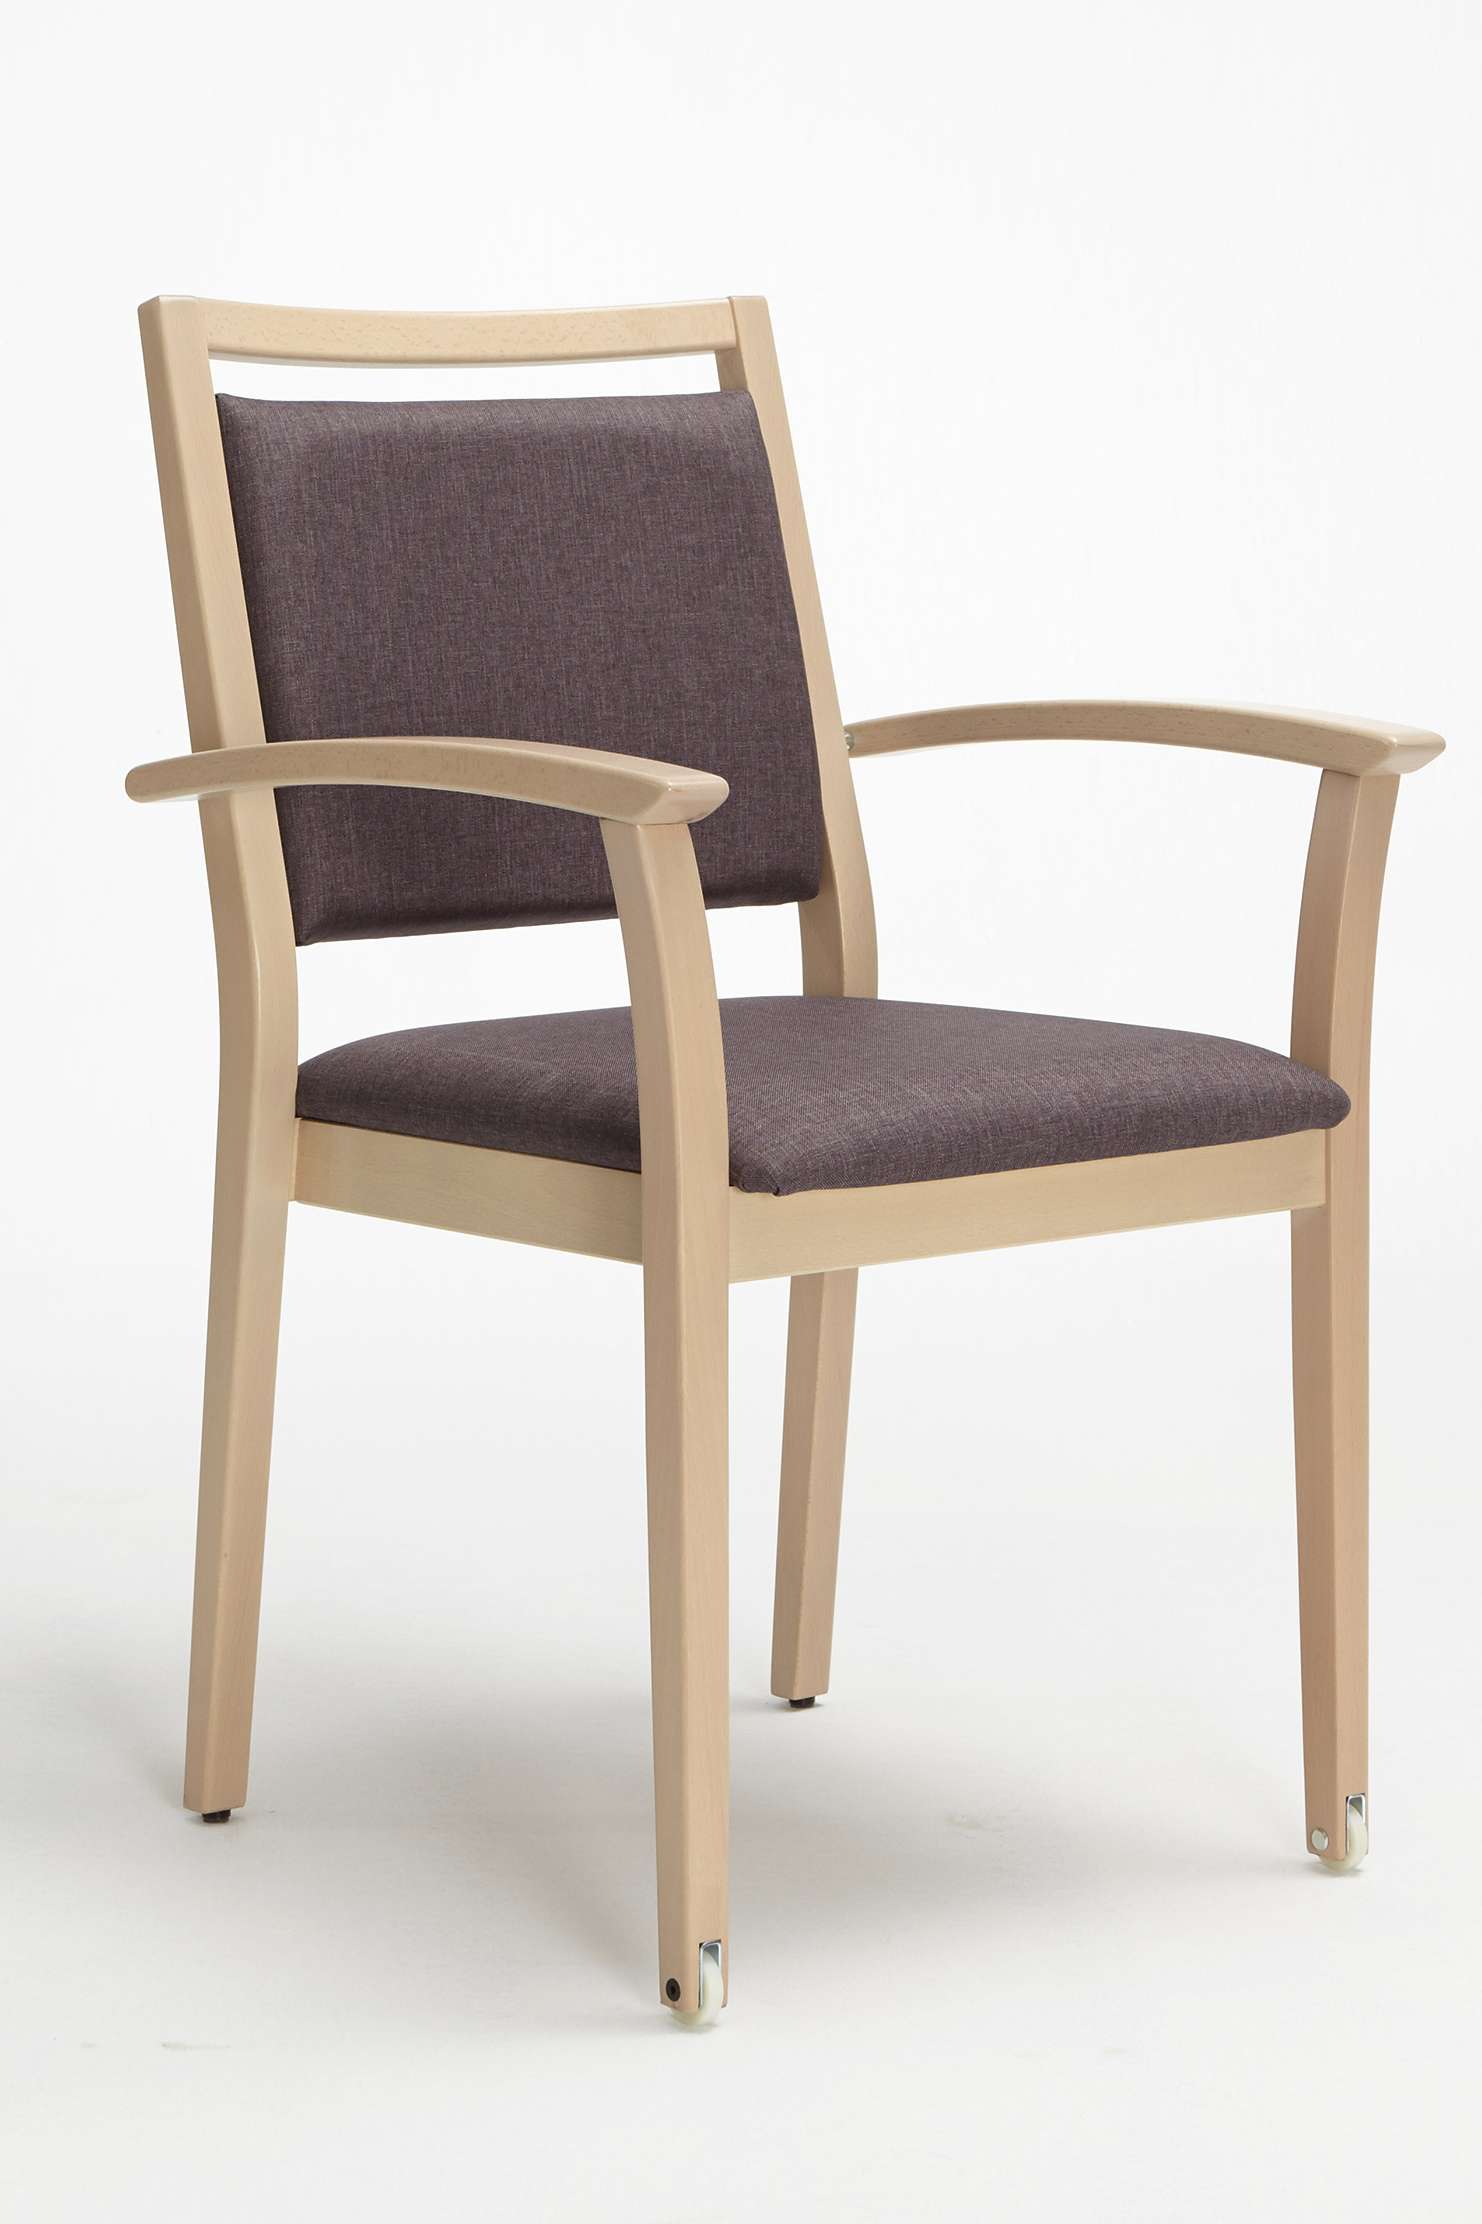 Modèle Mavo version chaise empilable avec accoudoirs